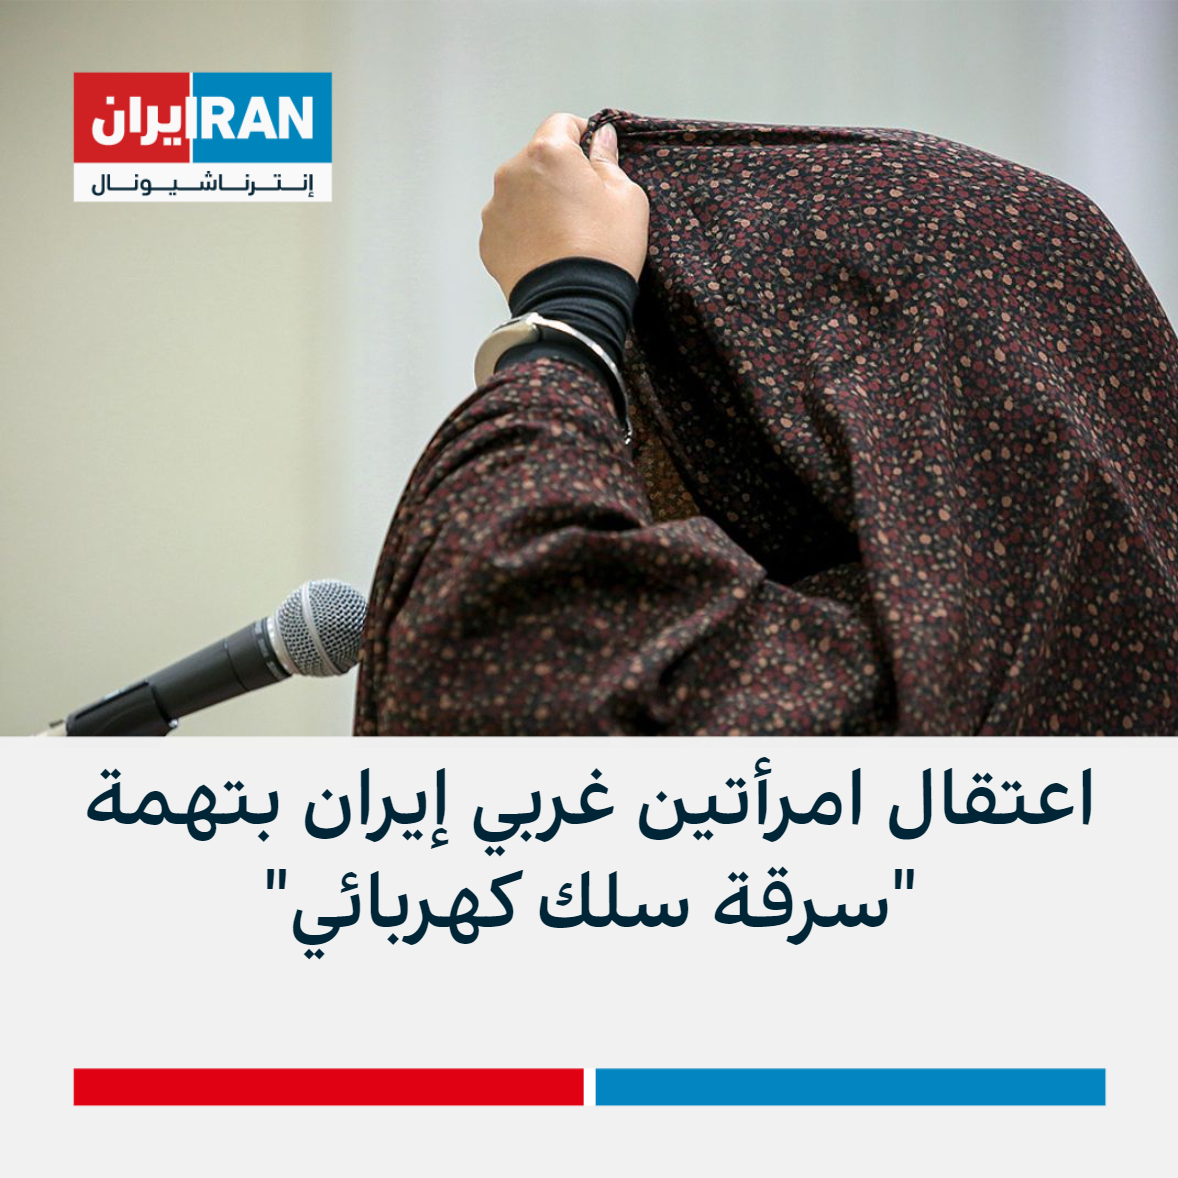 اعتقال امرأتين غربي إيران بتهمة سرقة سلك كهربائي